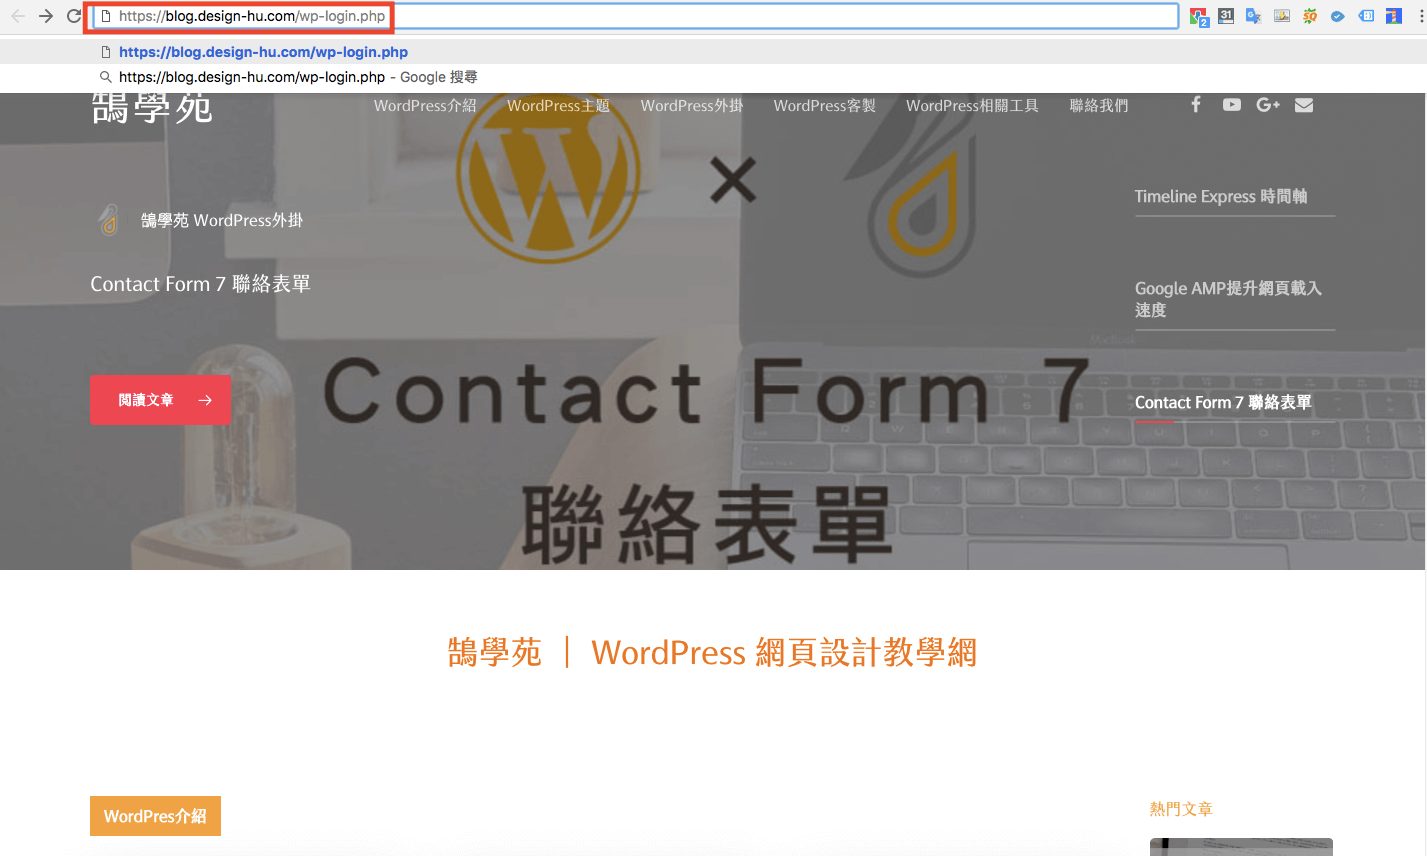 網站安全 更改 WordPress登入 網址 - 防止 WordPress後台 被破解! 